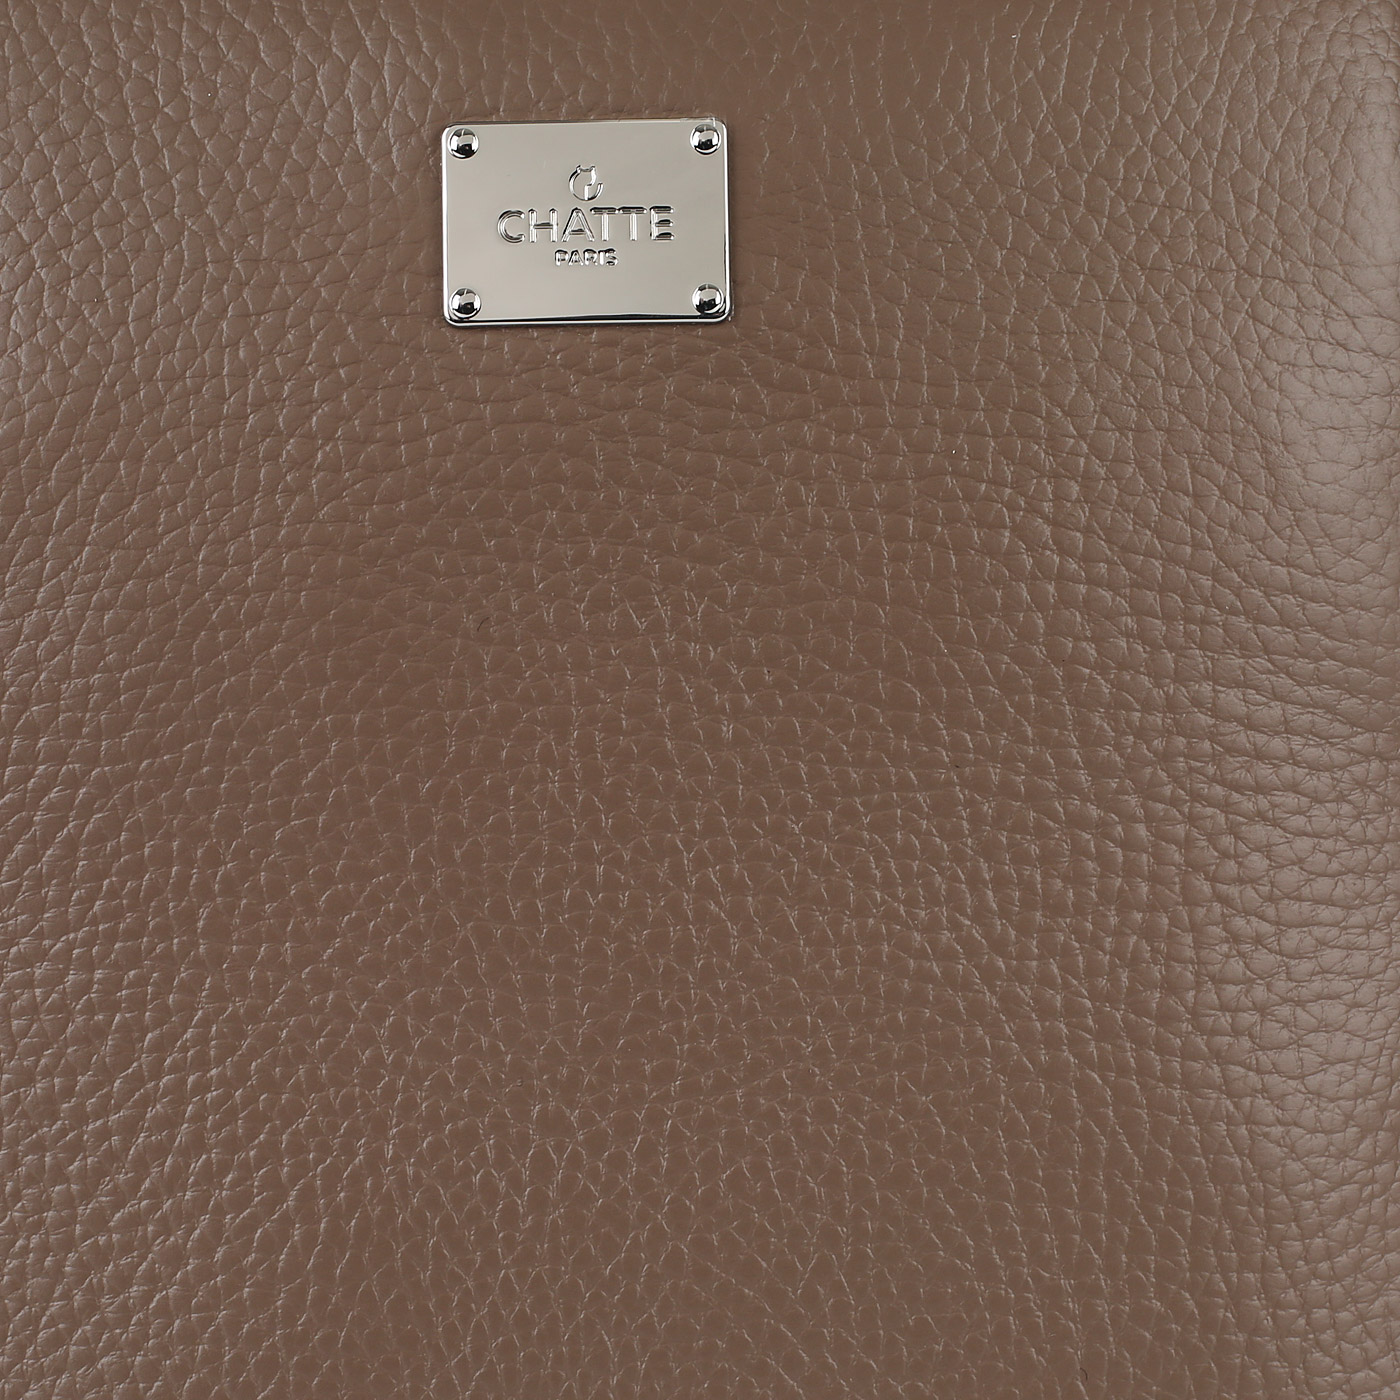 Серо-коричневый рюкзак с брелоком Chatte Lion